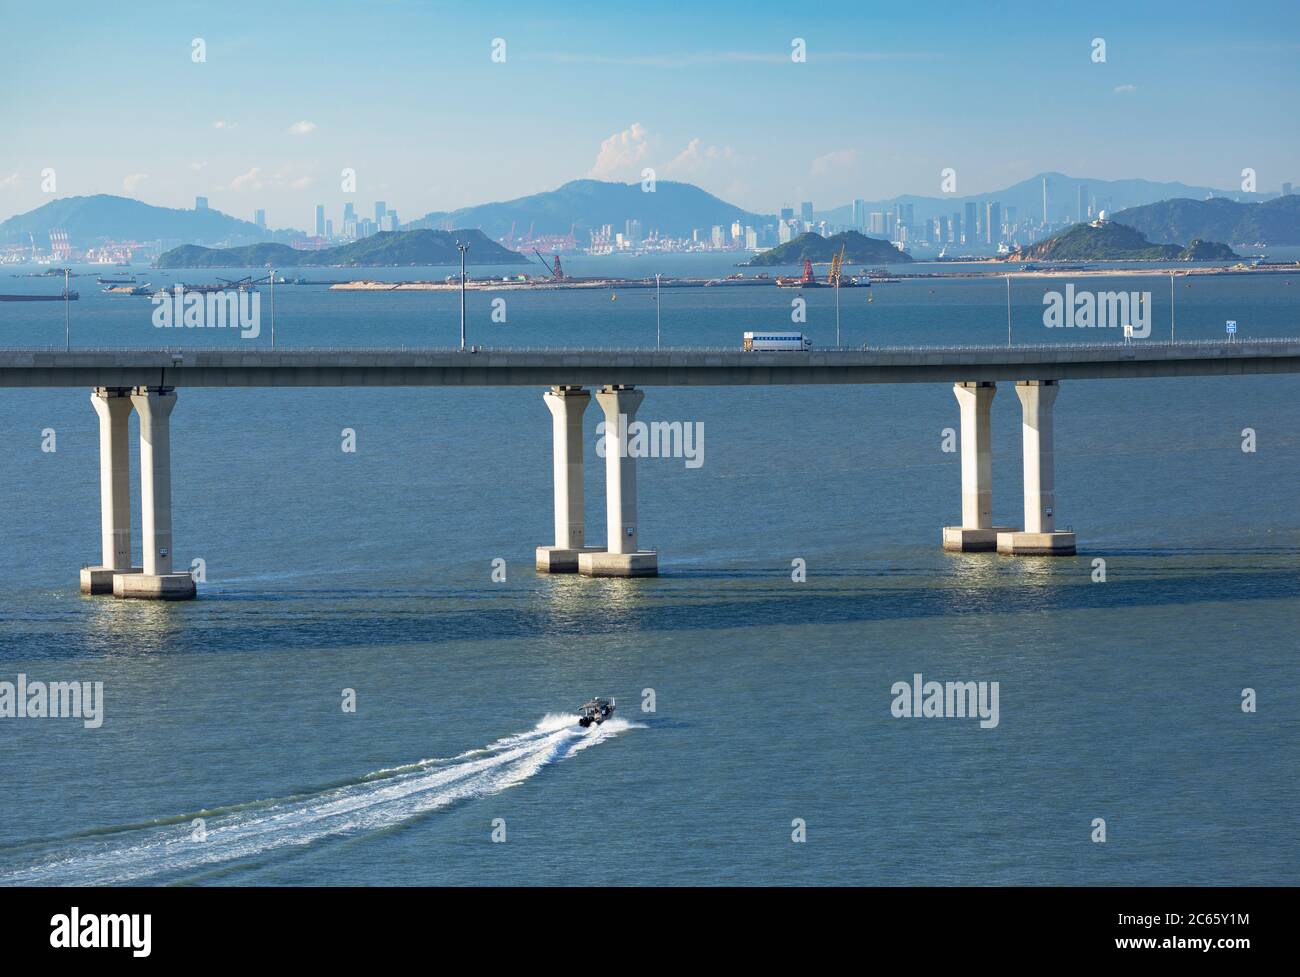 Hong Kong-Zhuhai-Macau bridge, Lantau Island, Hong Kong Stock Photo